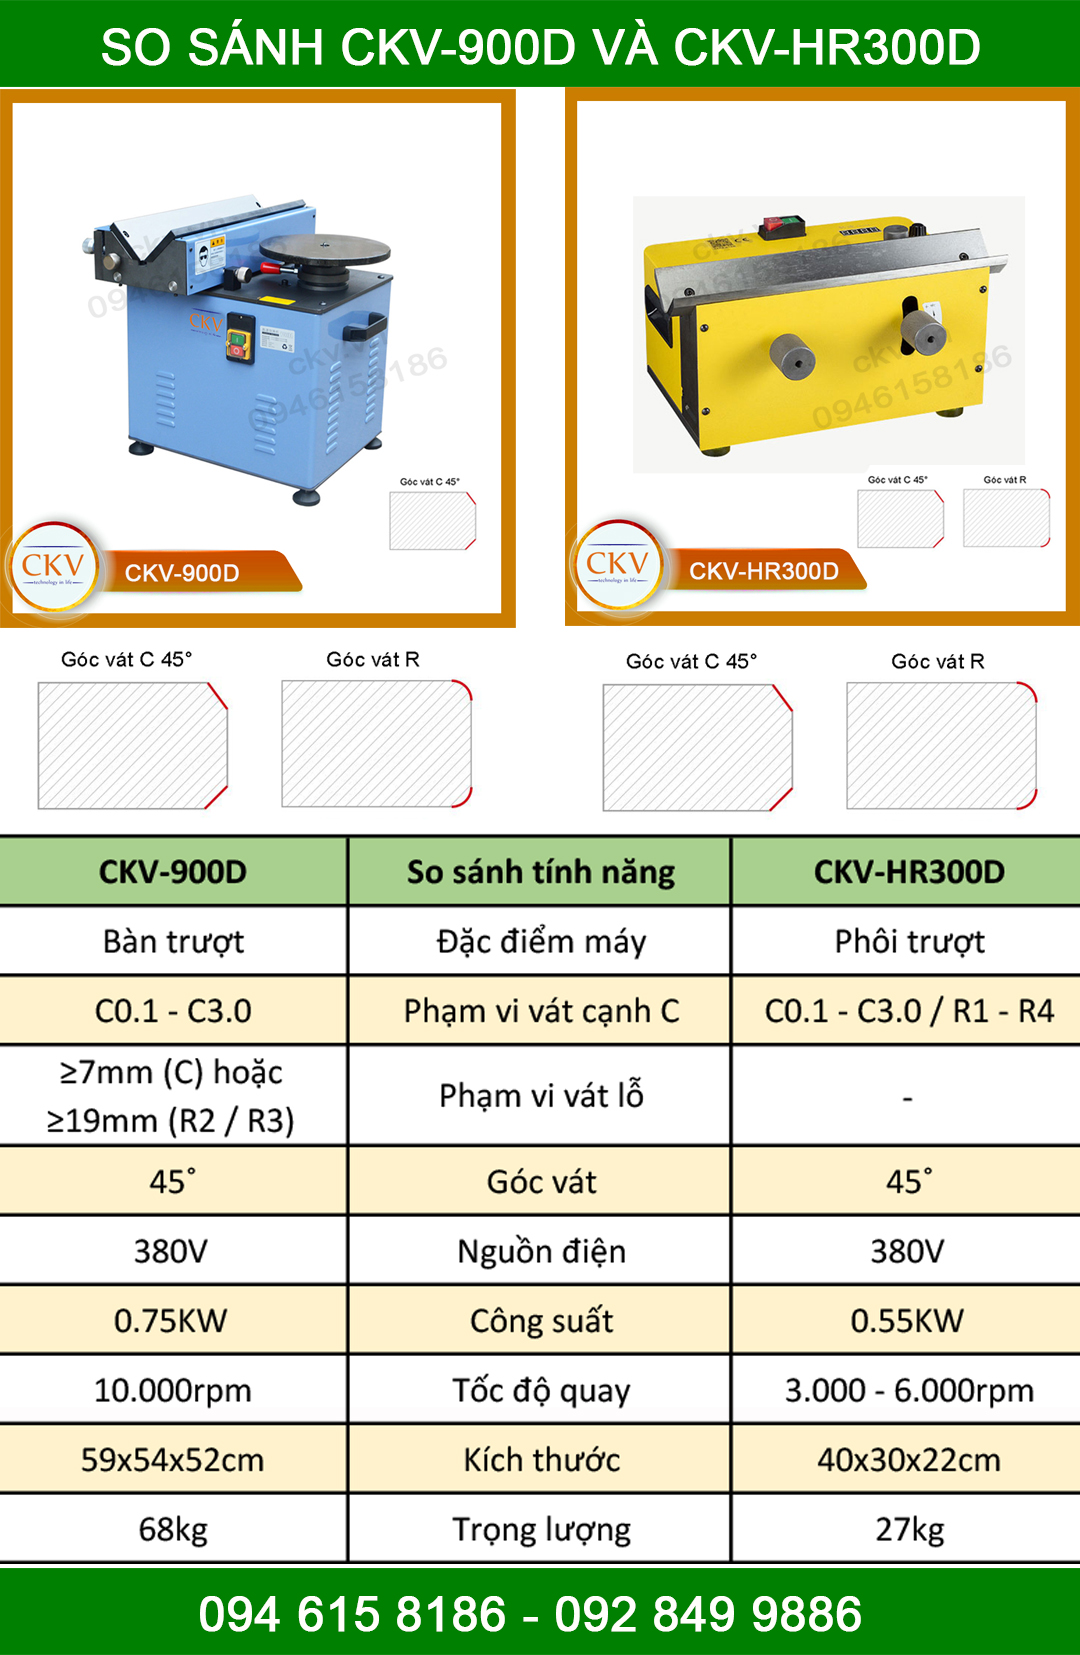 So sánh CKV-900D và CKV-HR300D